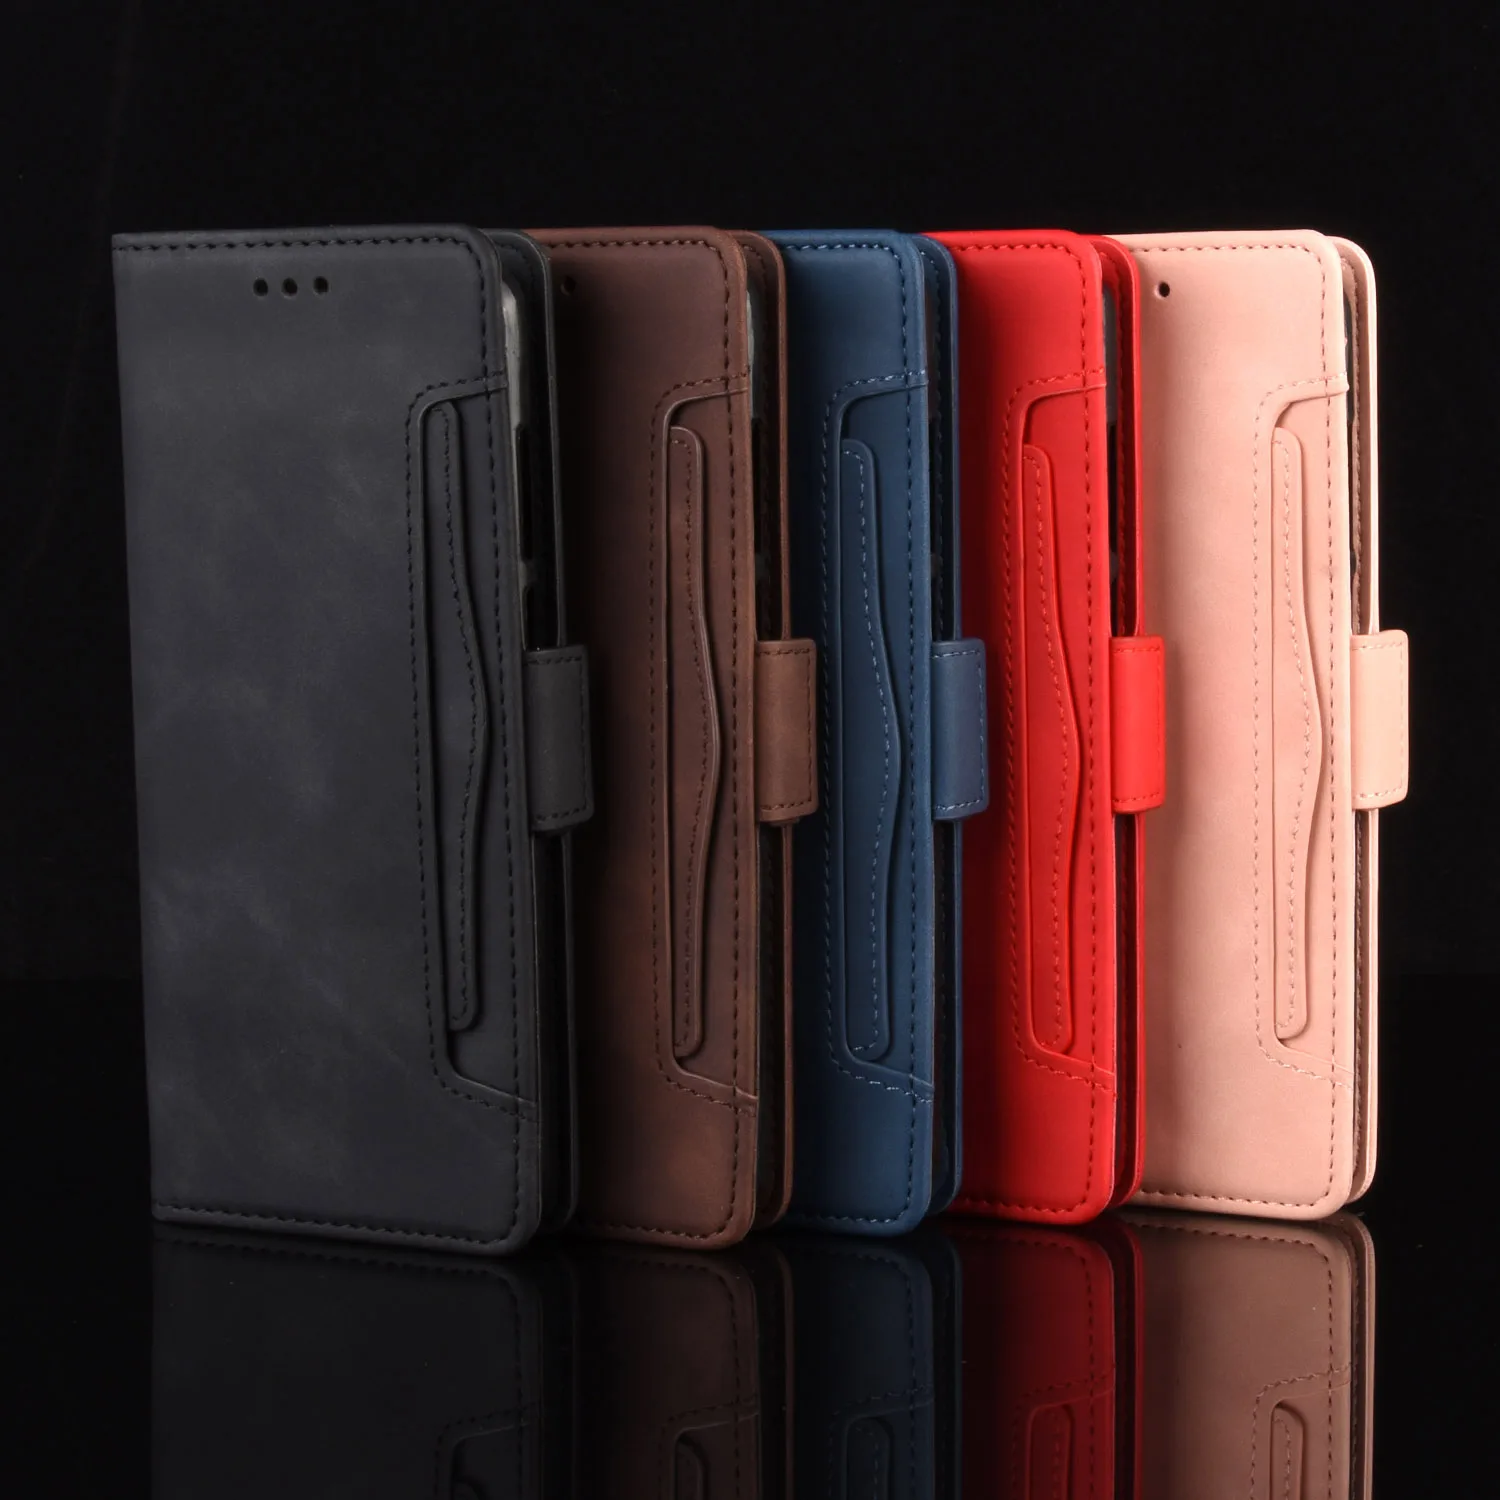 

Umidigi S5 Pro Case UMIDIGI S5Pro Wallet Flip Style Skin Feel Leather Phone Cover For UMIDIGI S5 Pro with Separate Card Slot